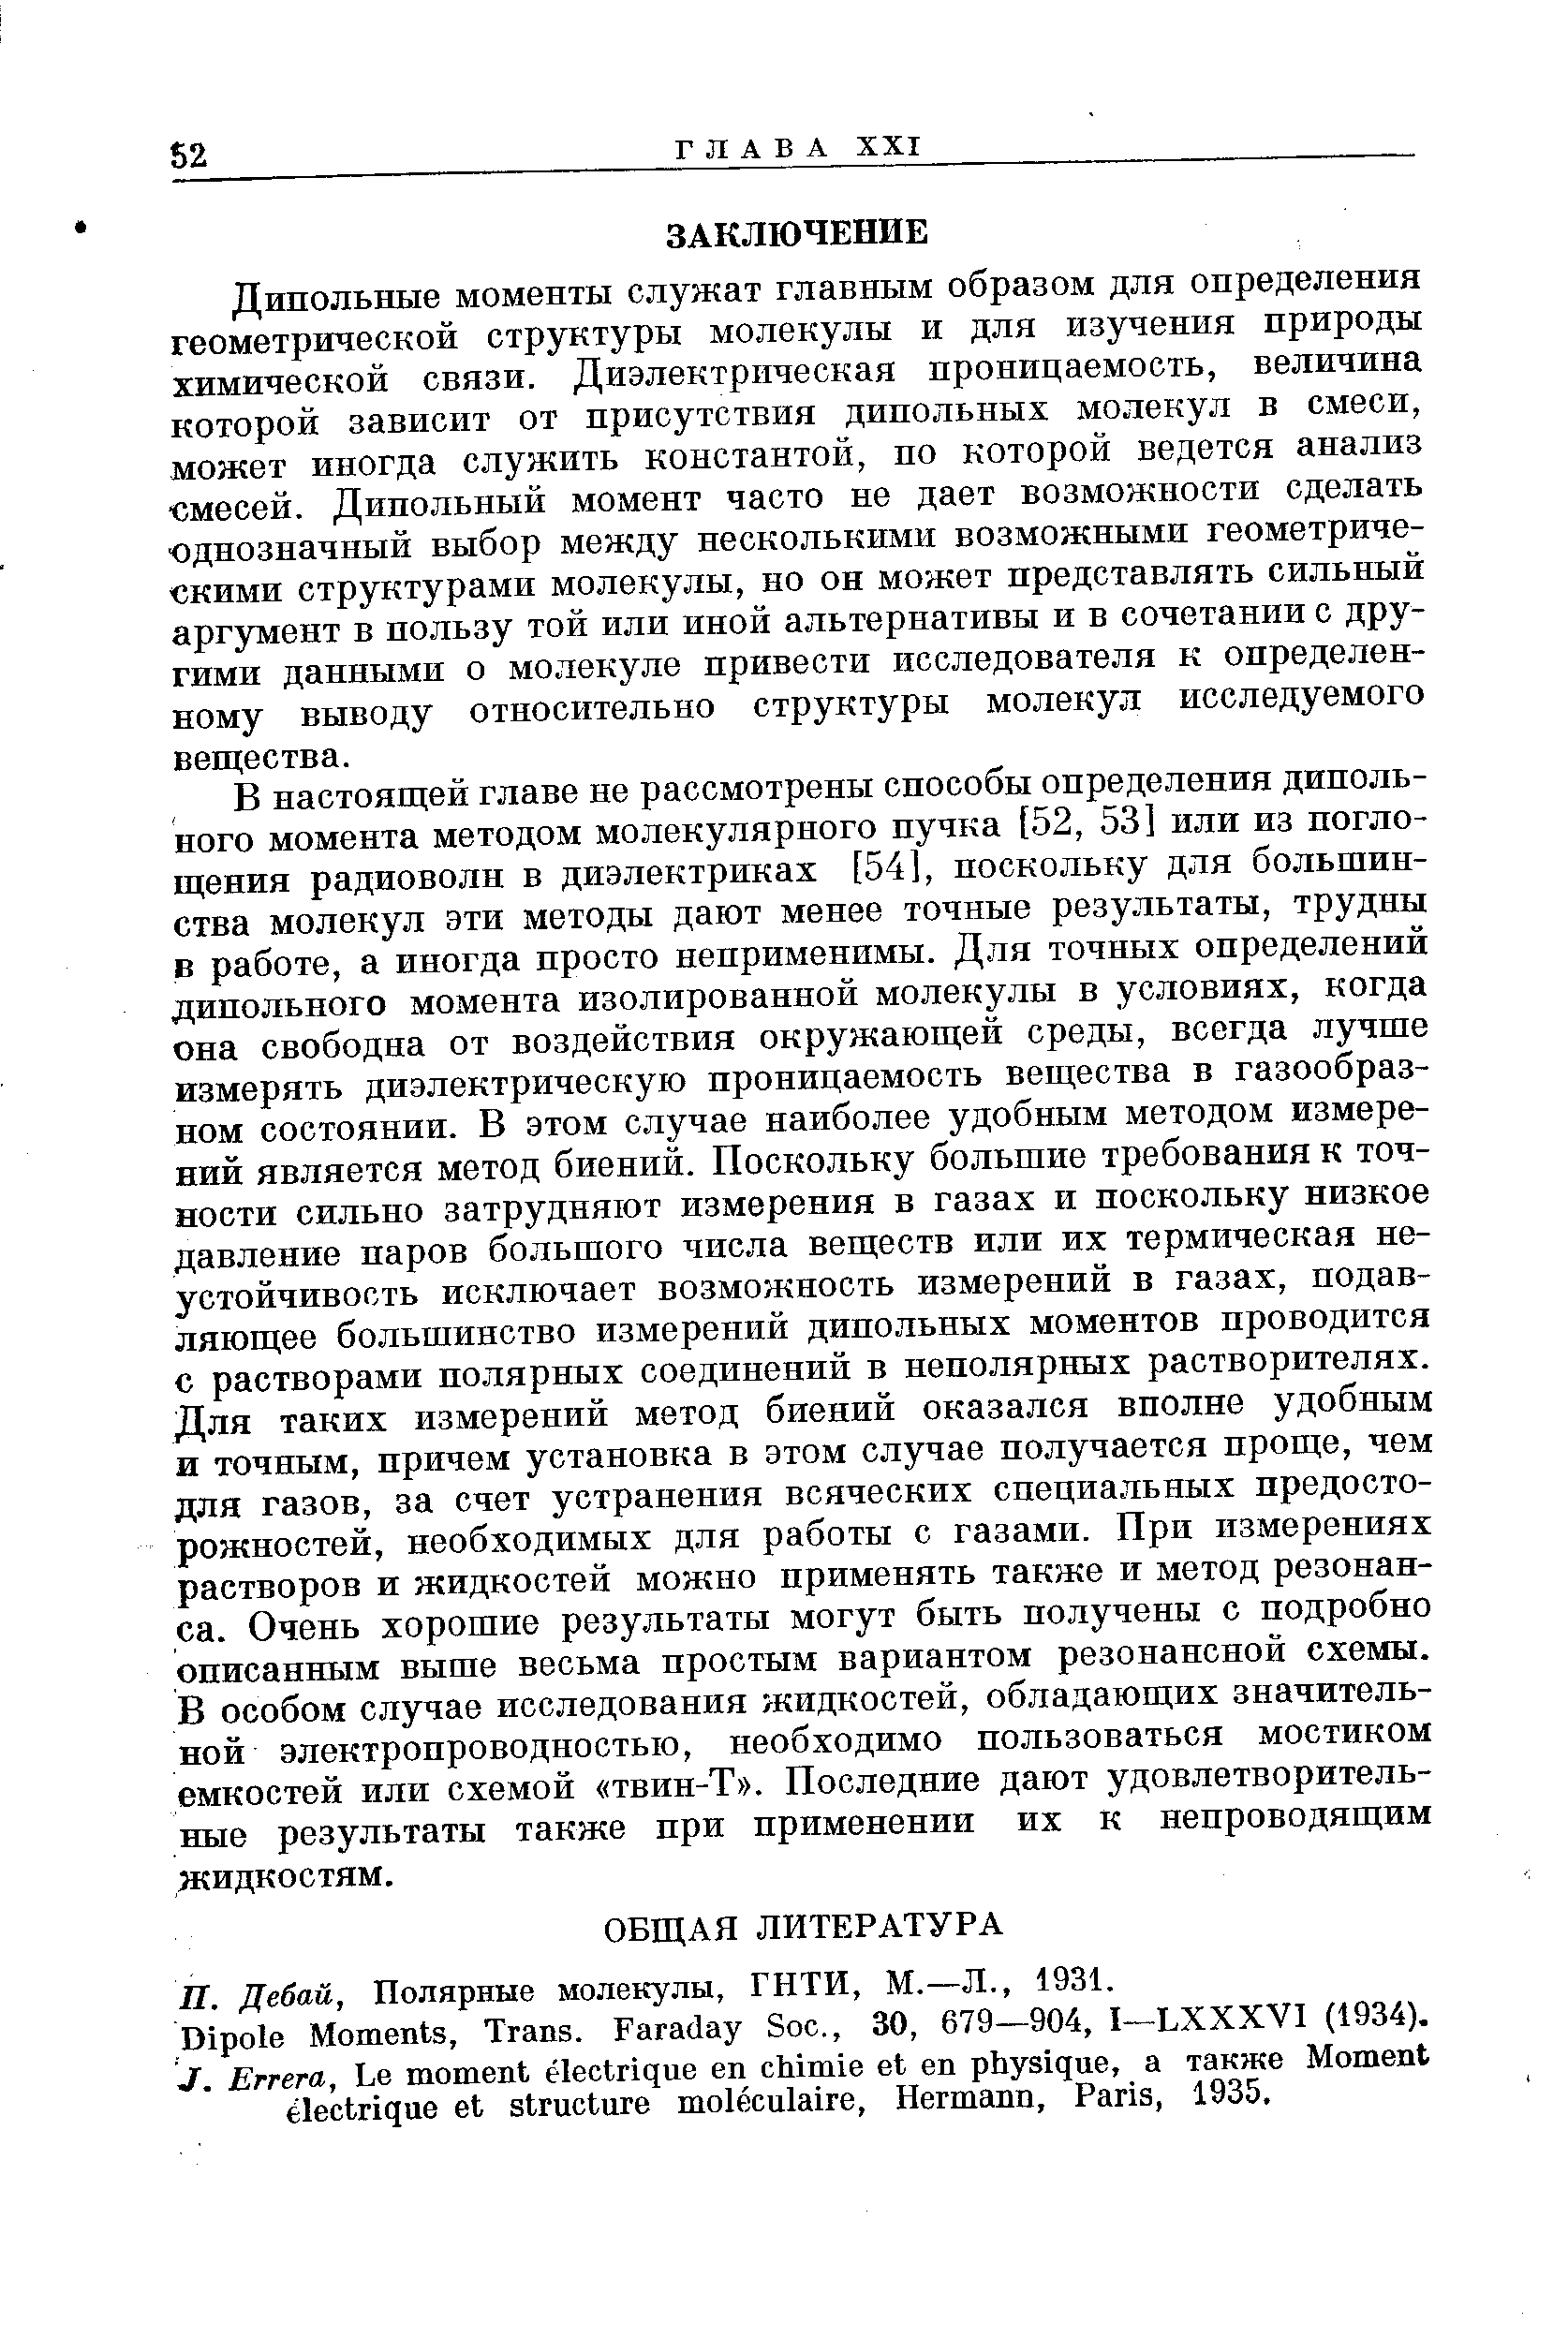 Полярные молекулы, ГНТИ, М.—Л., 1931.